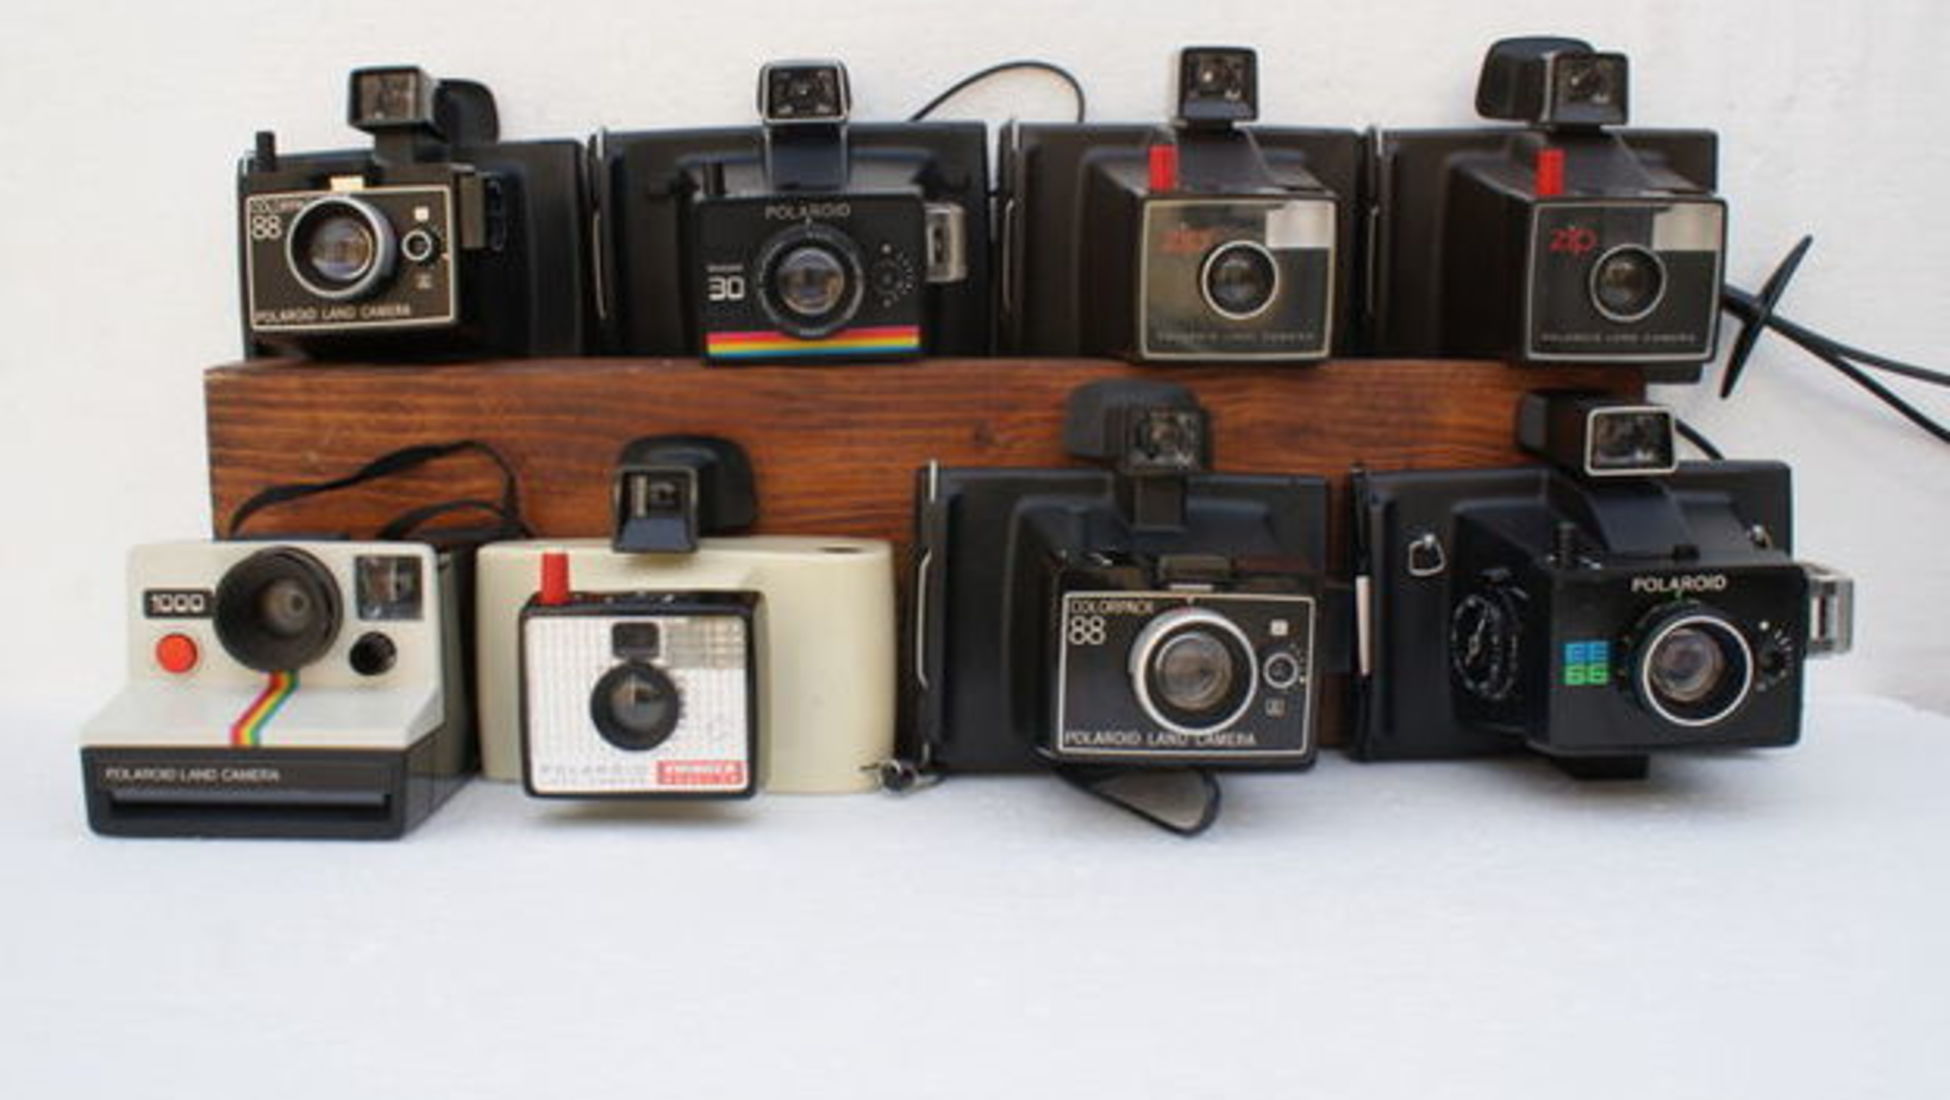 Old polaroid camera photo